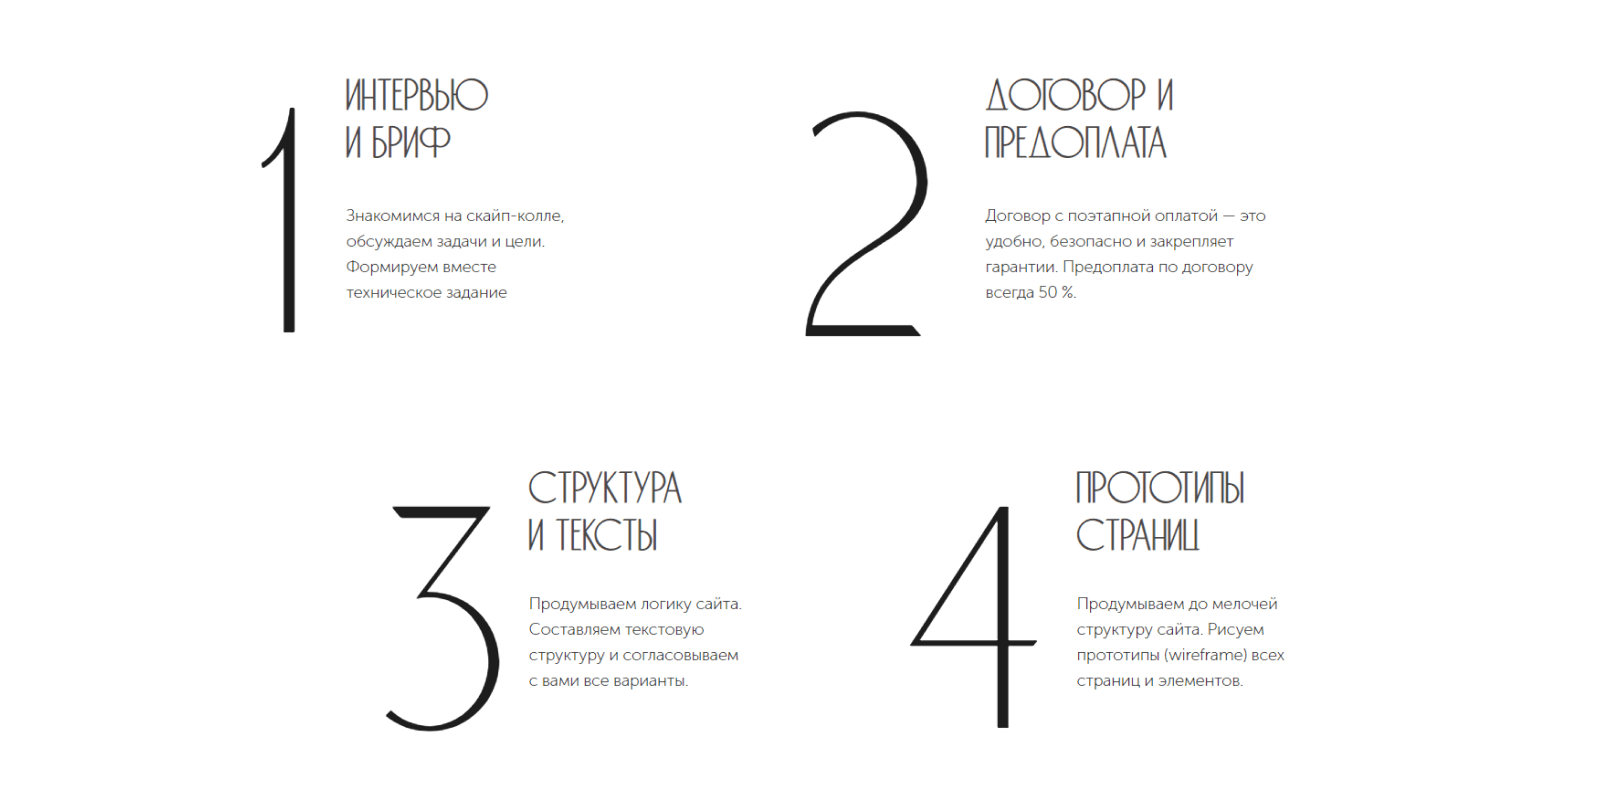 Минимализм в веб-дизайне | kormstroytorg.ru